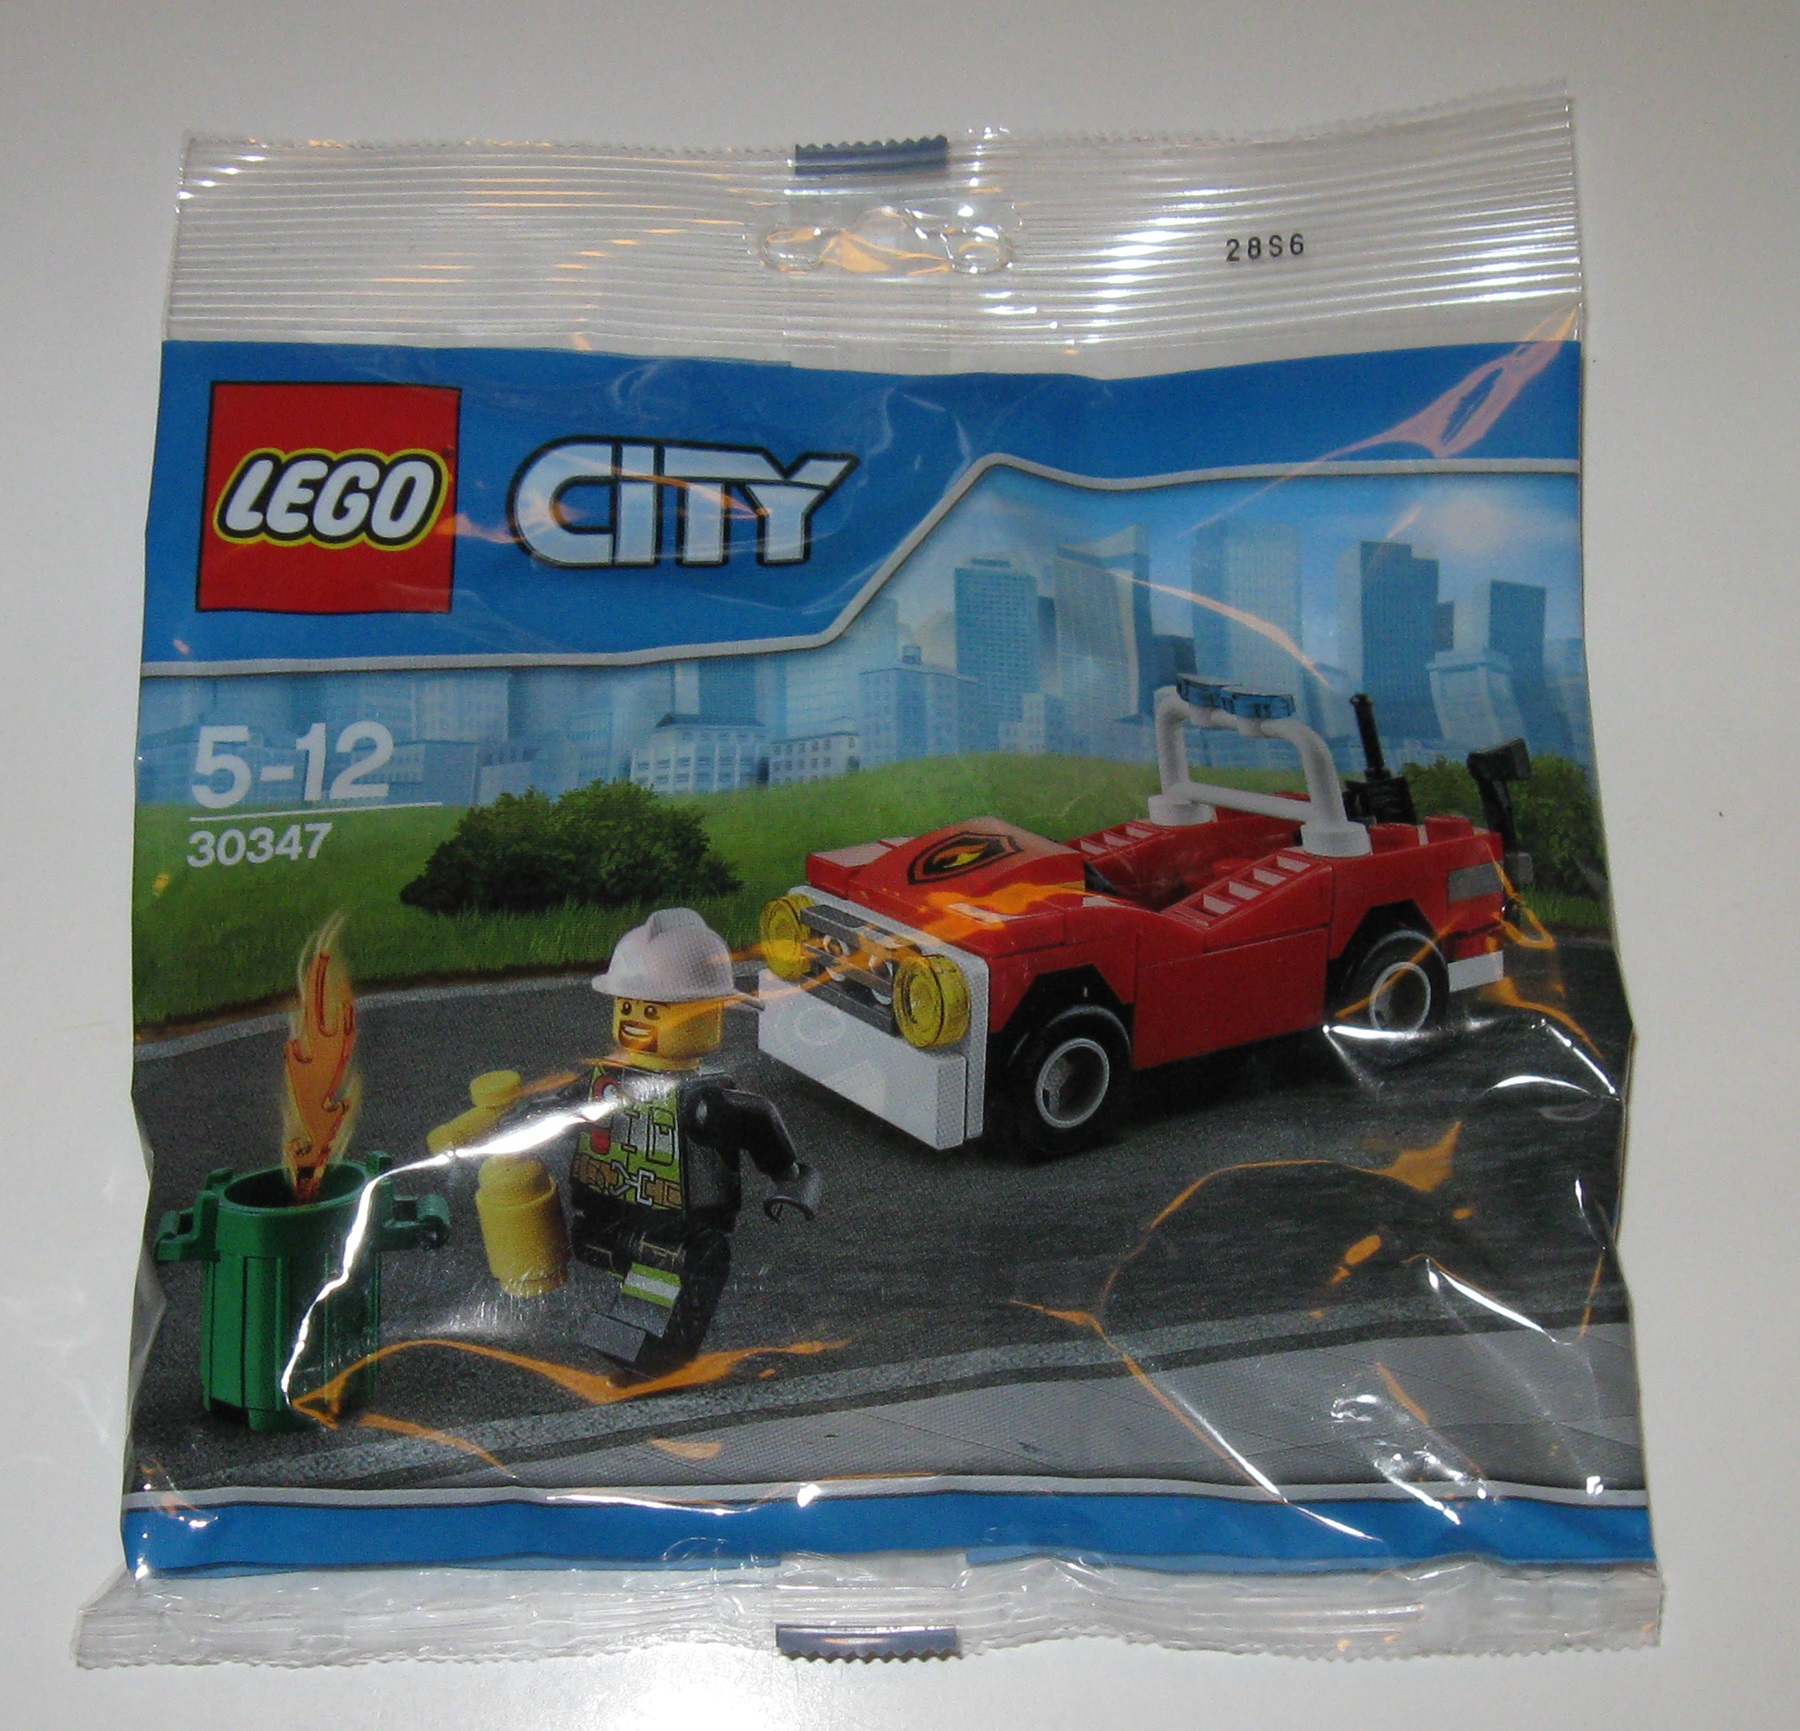 Lego City